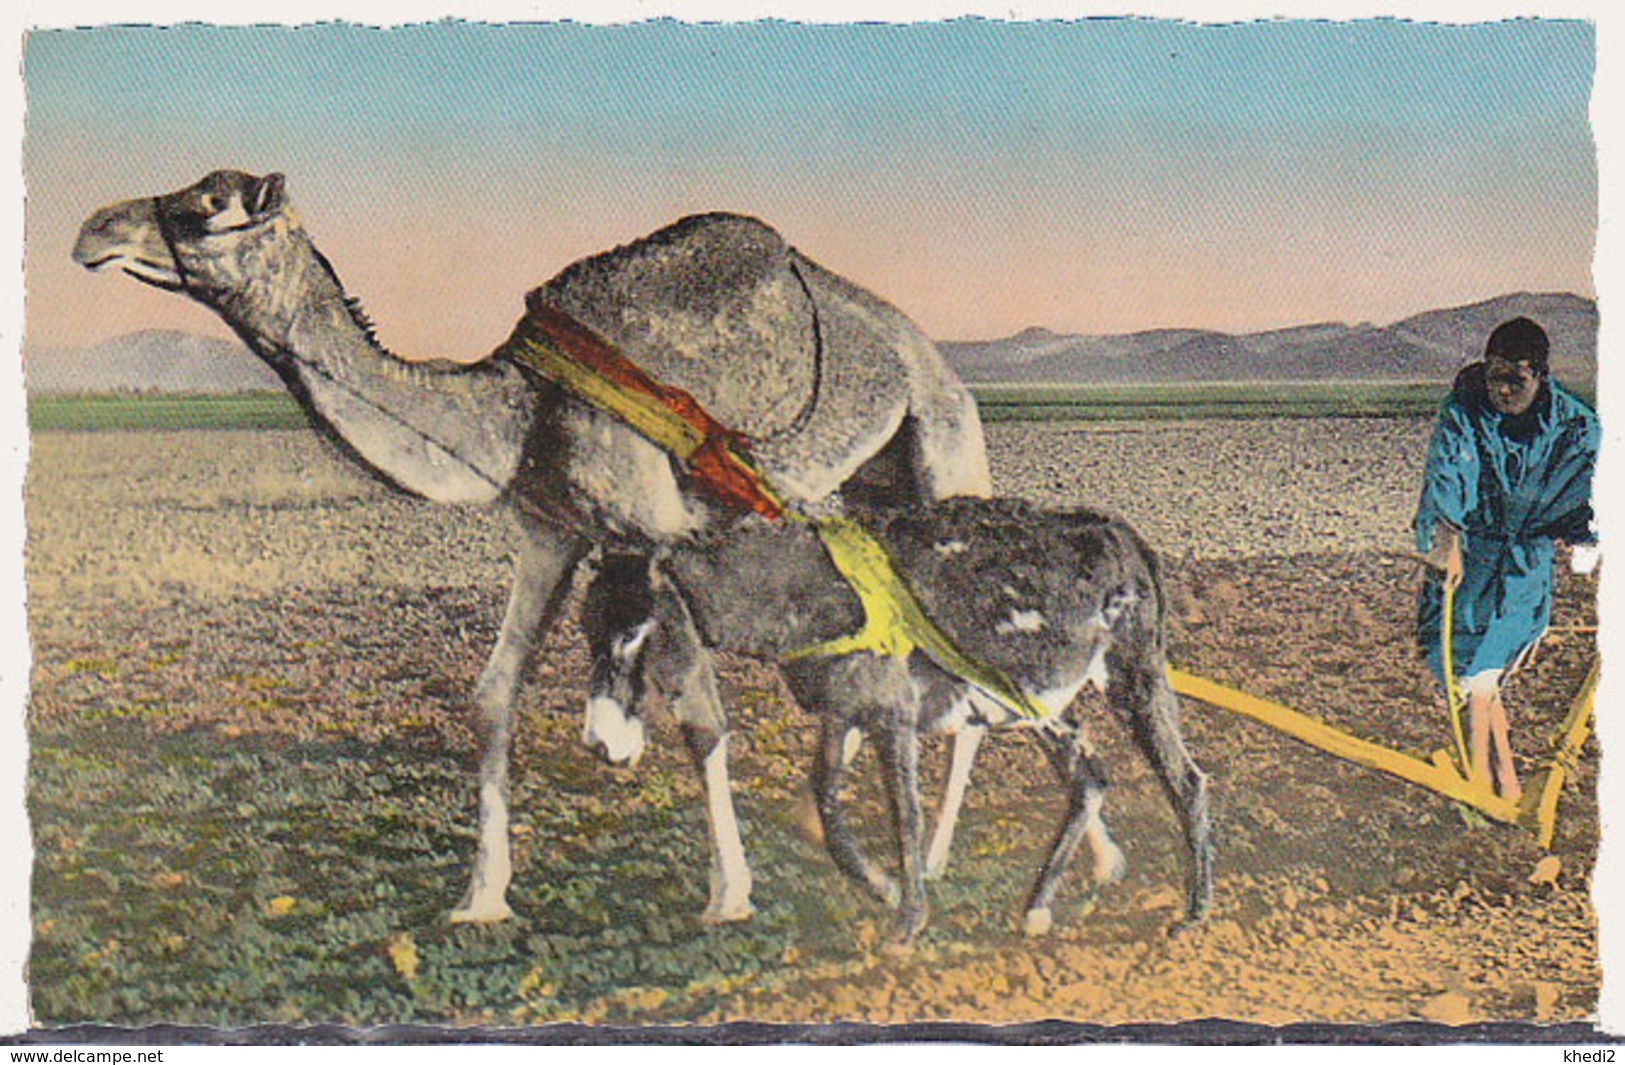 Carte Postale CP - ANIMAL  -CHAMEAU & ANE - CAMEL & DONKEY Postcard - KAMEL & ESEL Postkarte AK - 22 - Donkeys